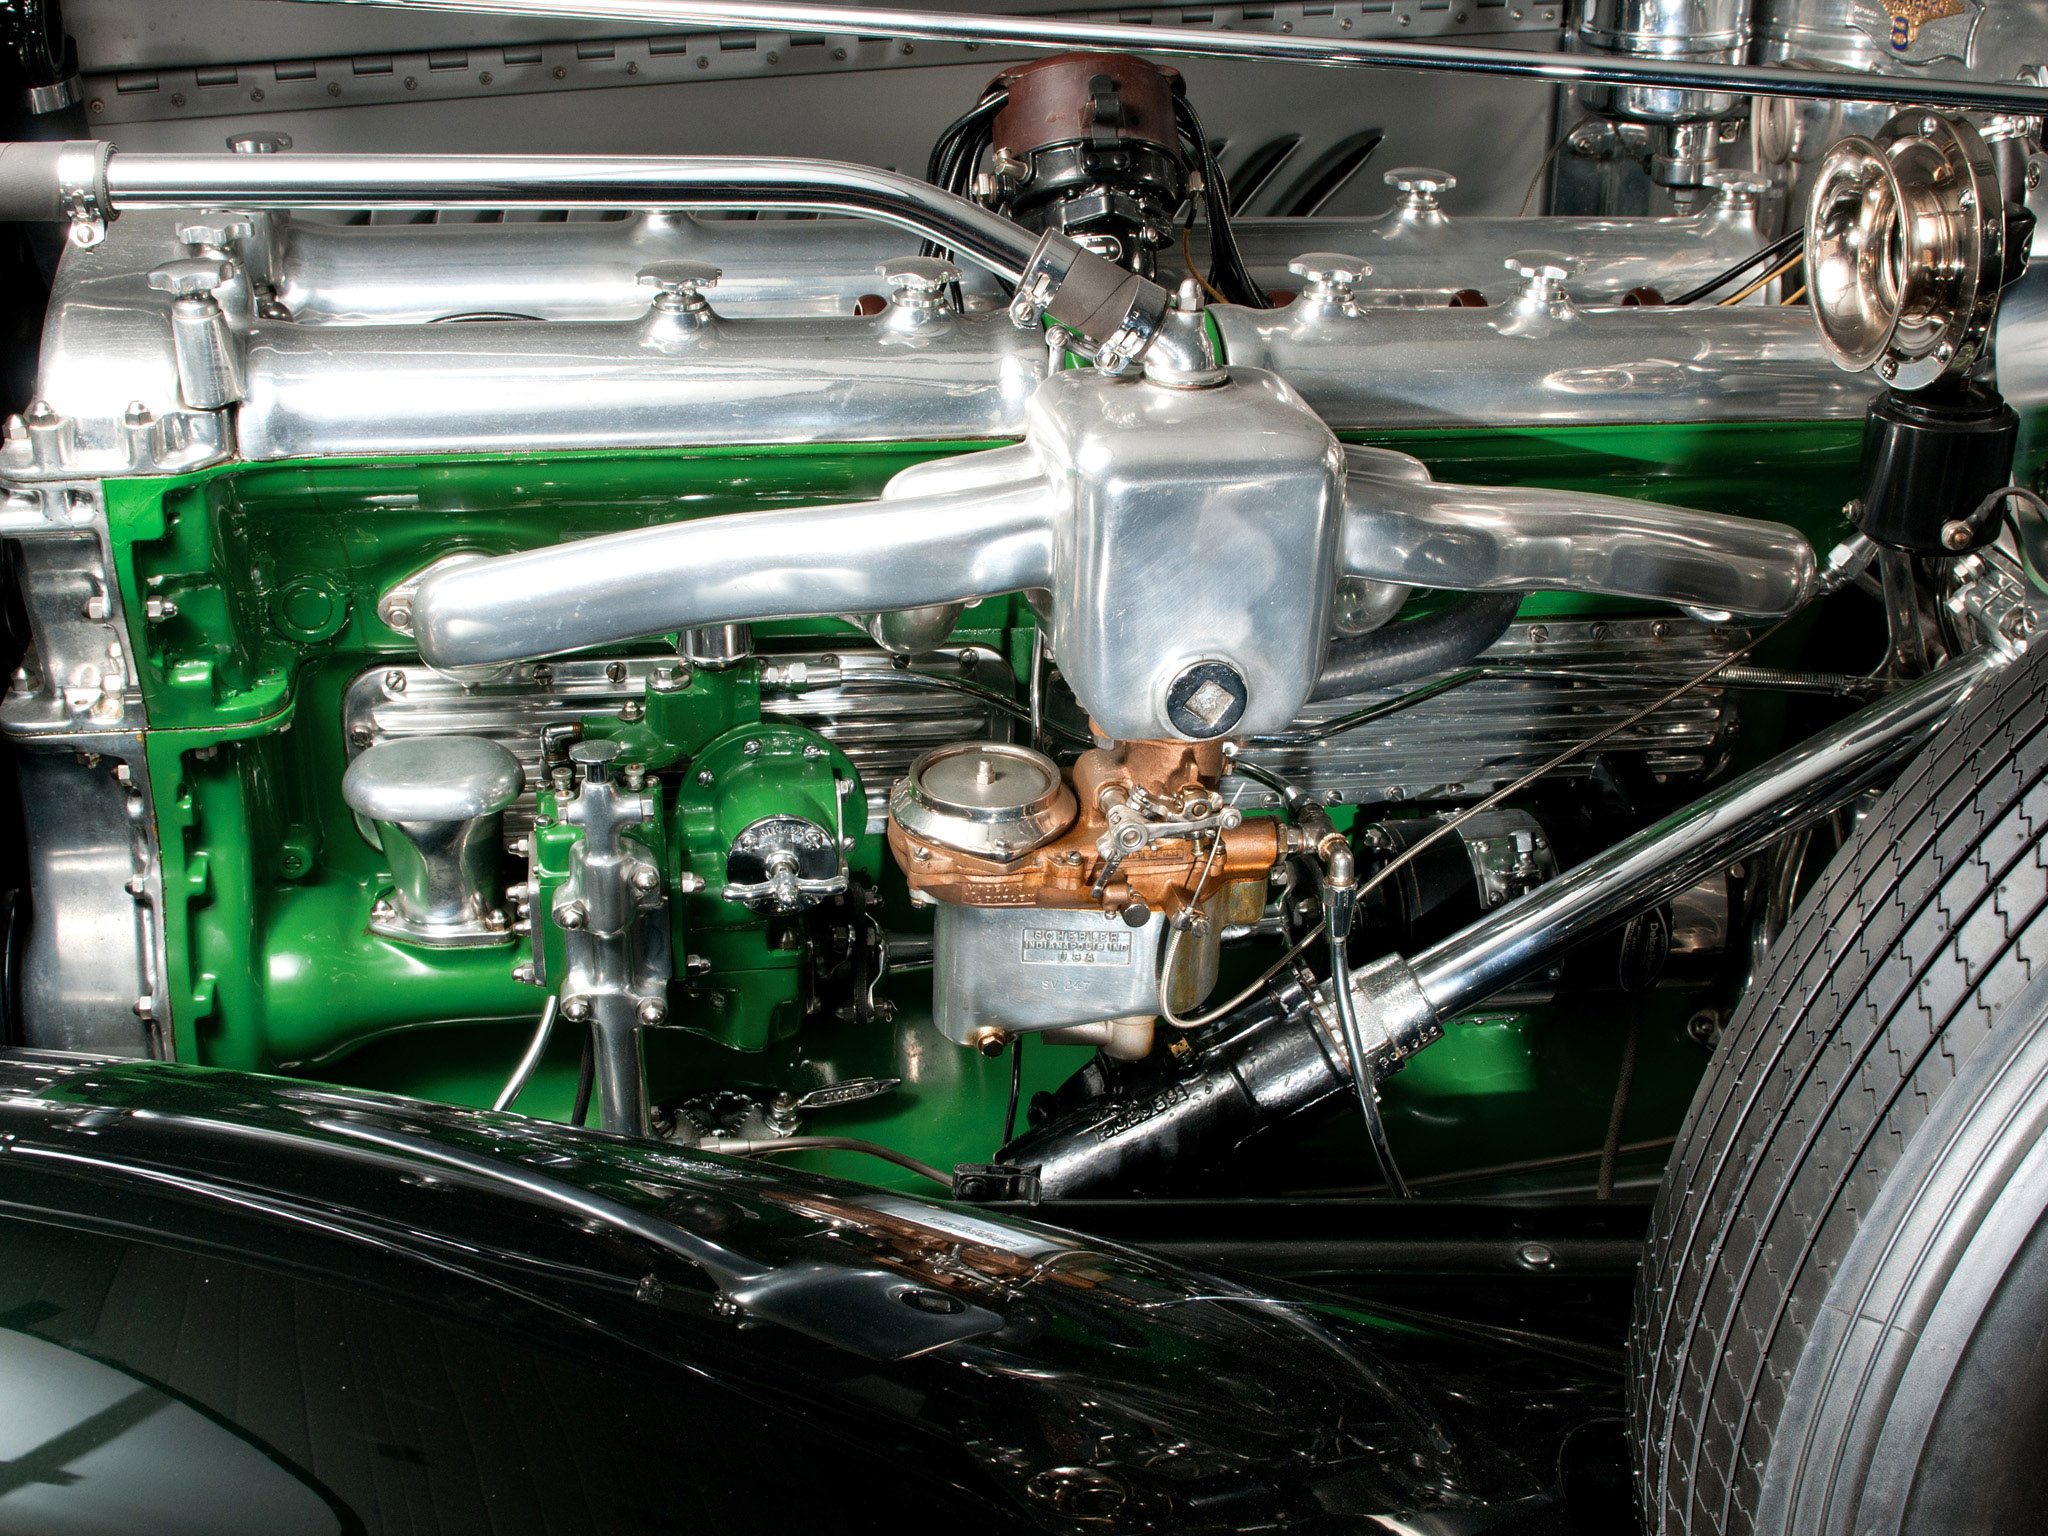 1929, Duesenberg, Model j, Dual, Cowl, Phaeton, Retro, Engine, Engines Wallpaper